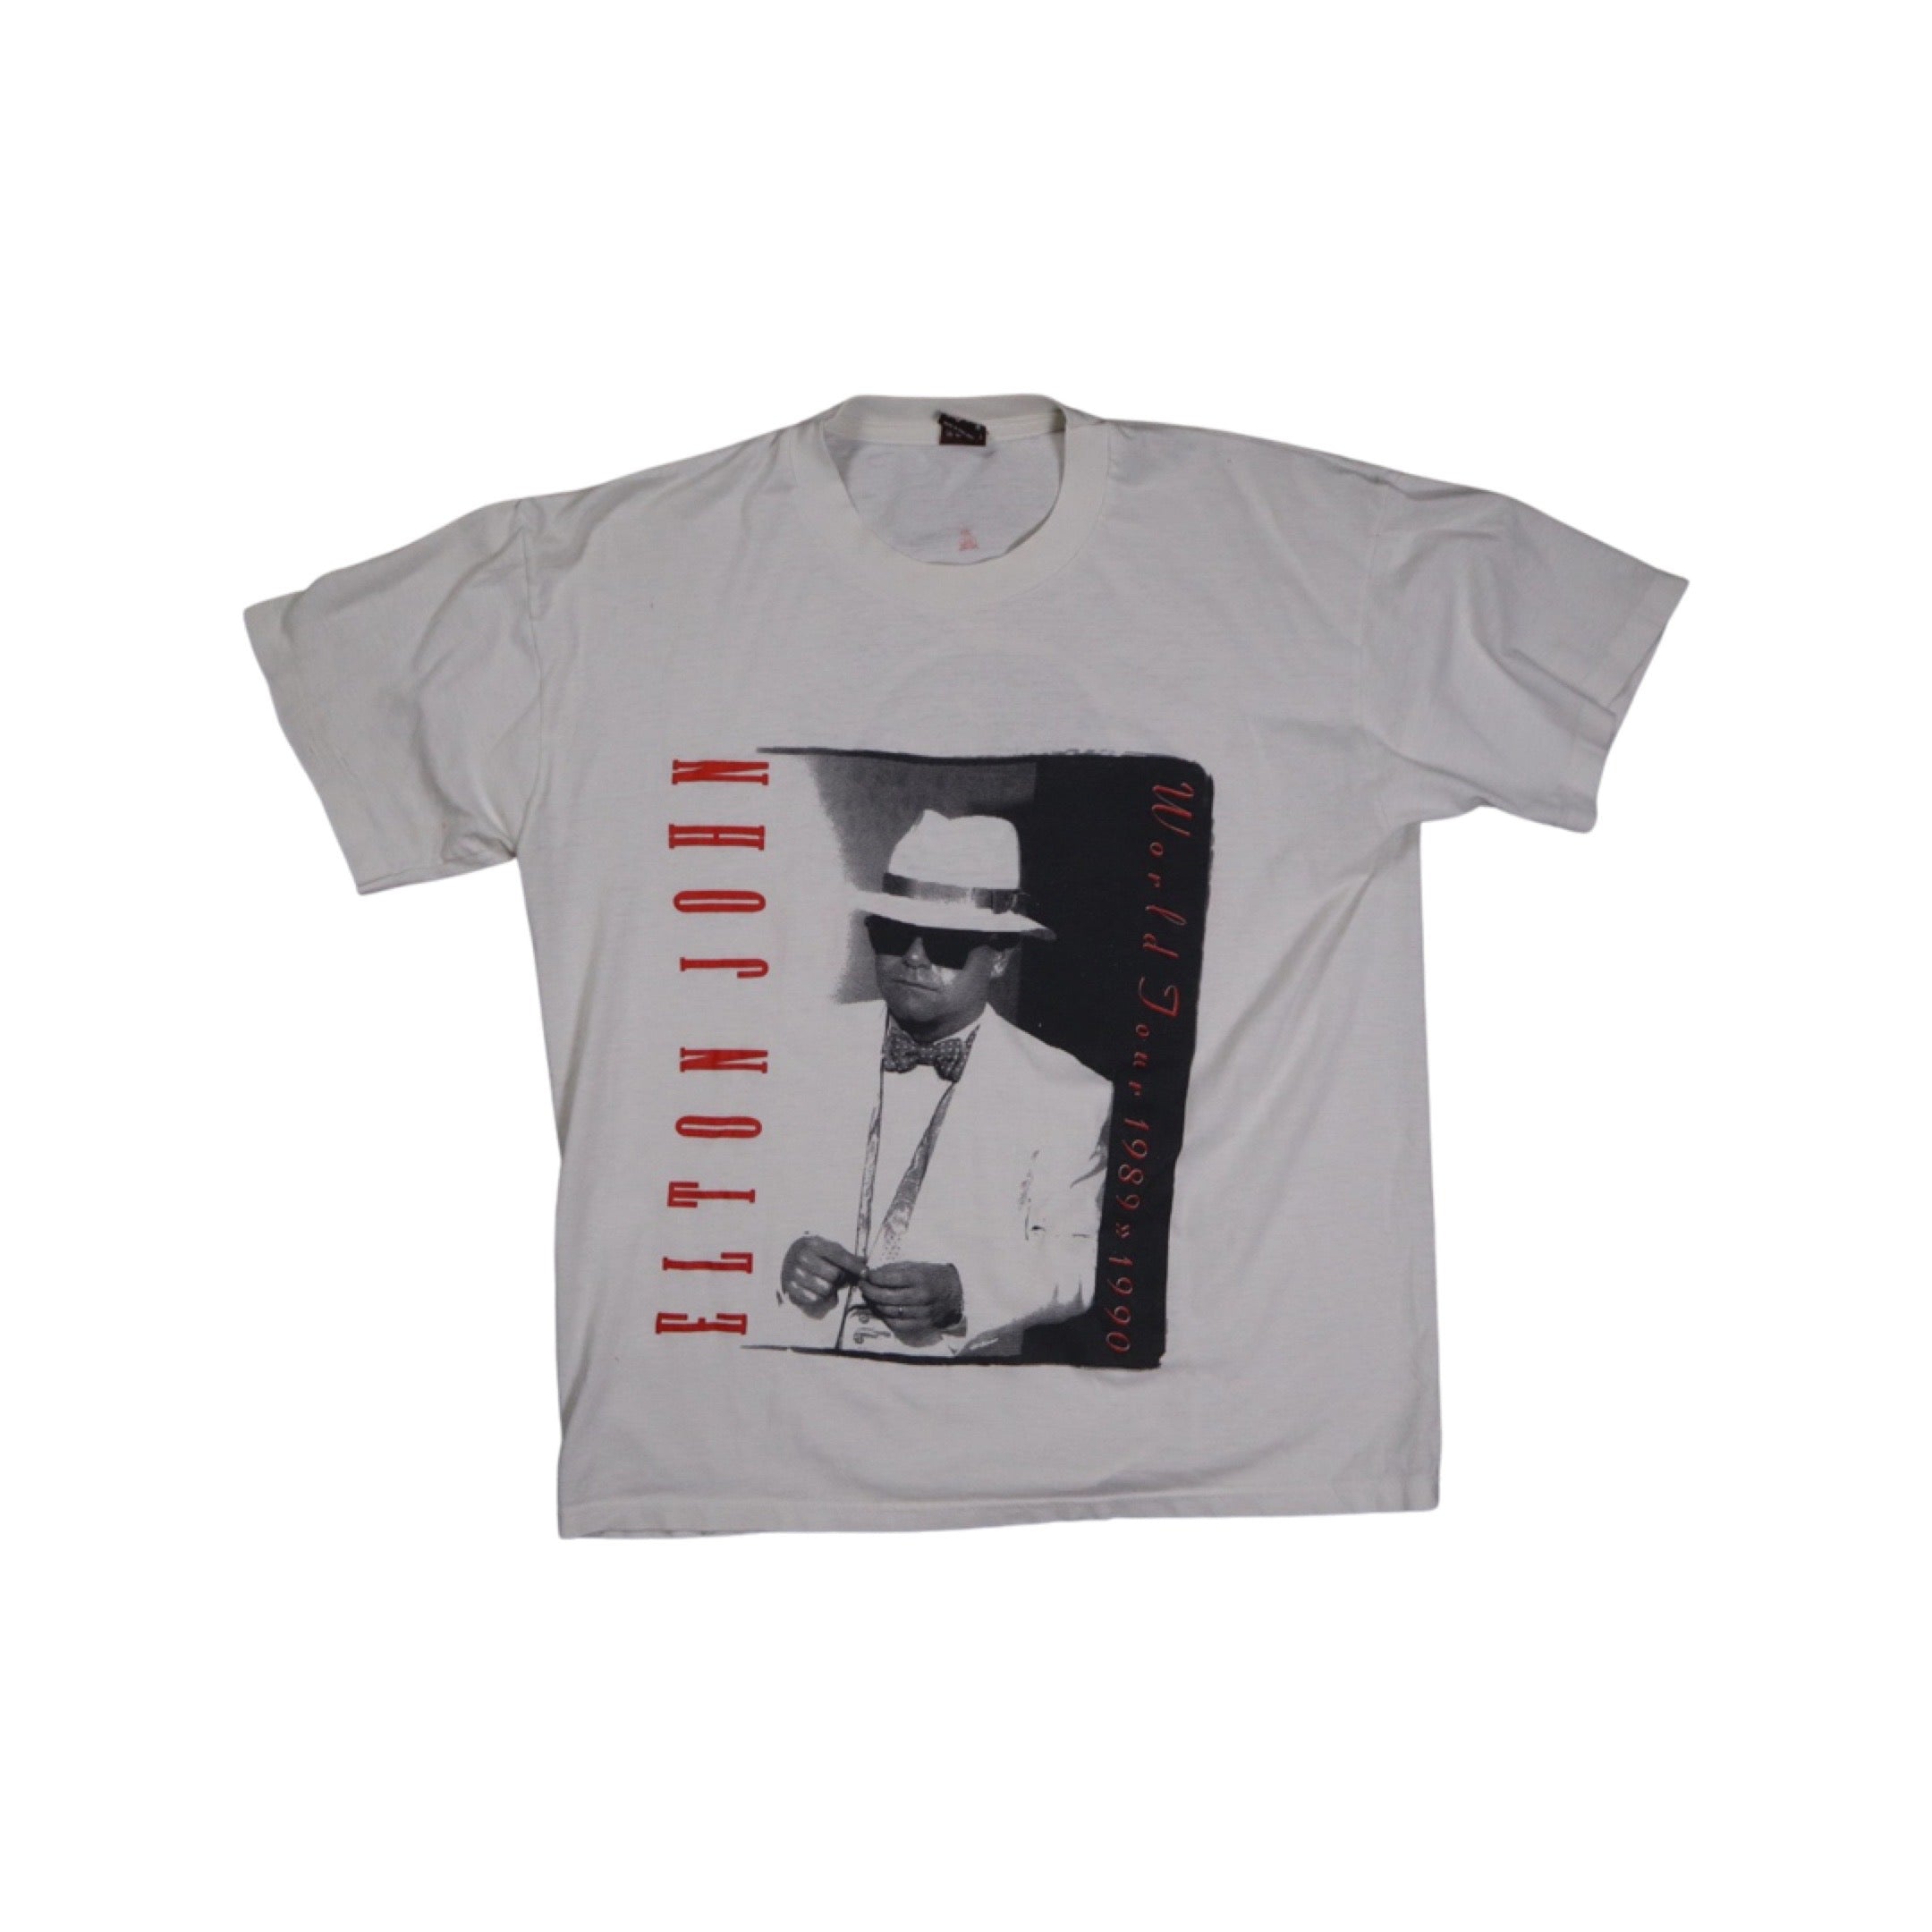 Elton John 1989 Tour T-Shirt Grail (Small)